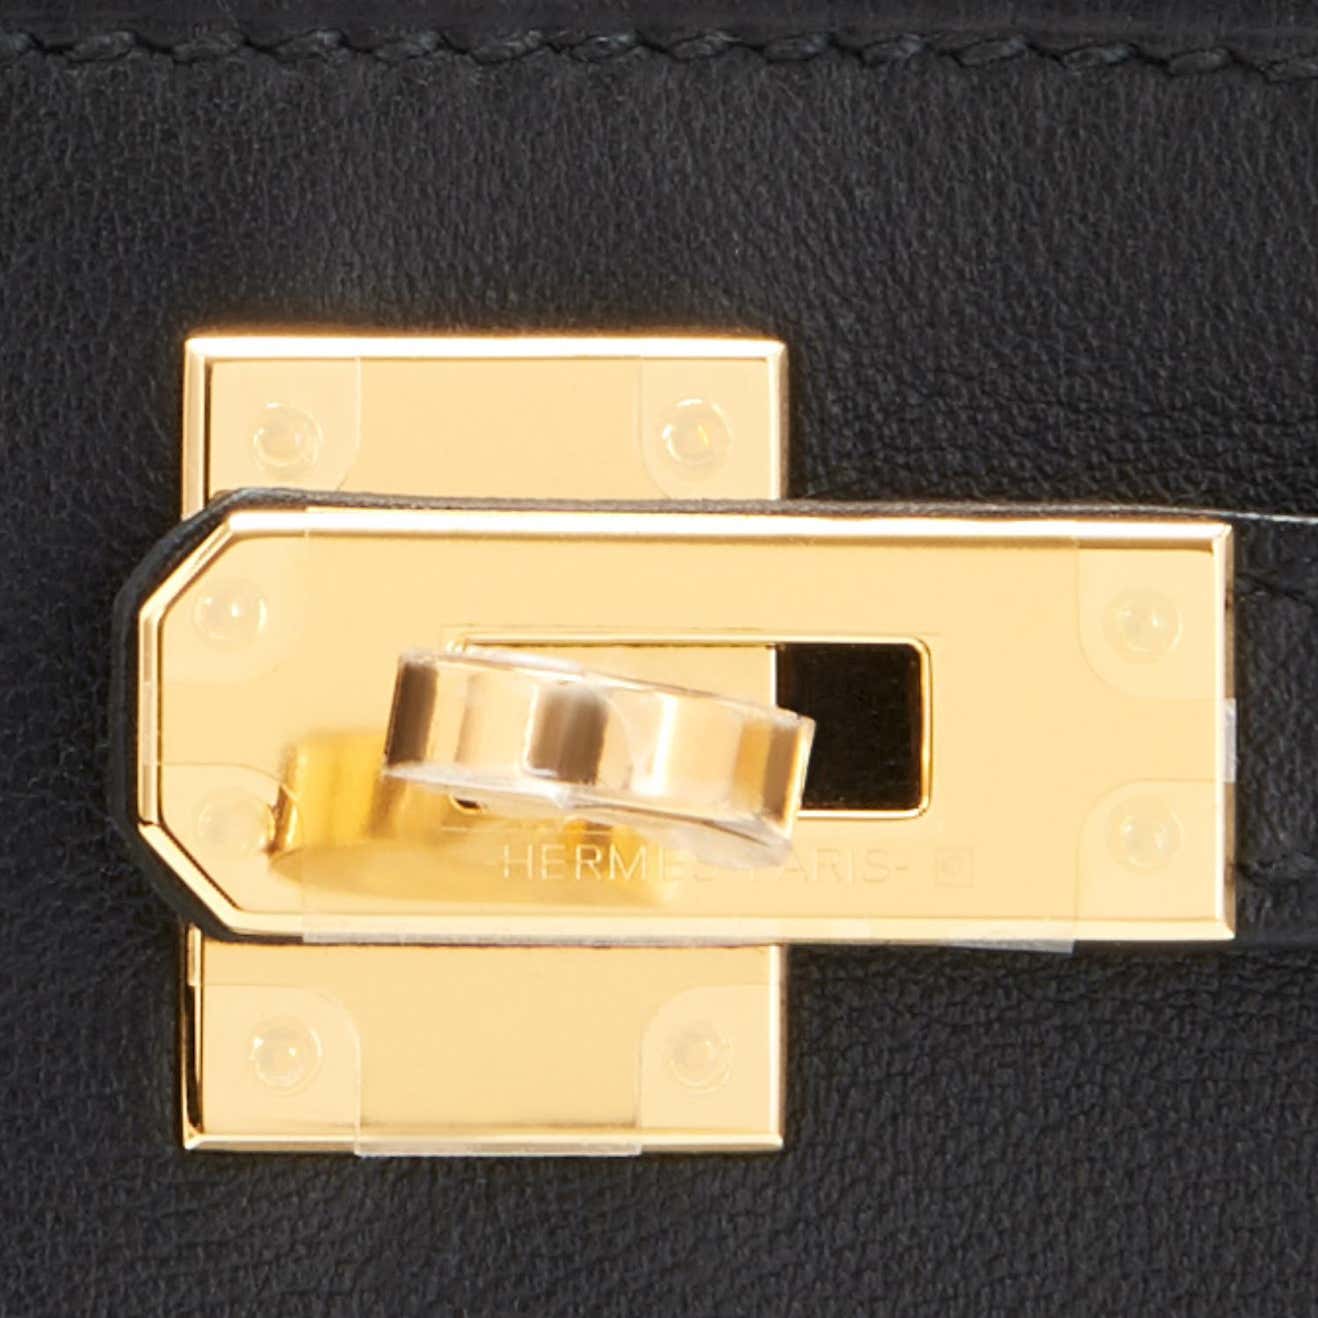 Hermes Kelly Pochette Menthe Gold Hardware Clutch Cut Bag Z Stamp